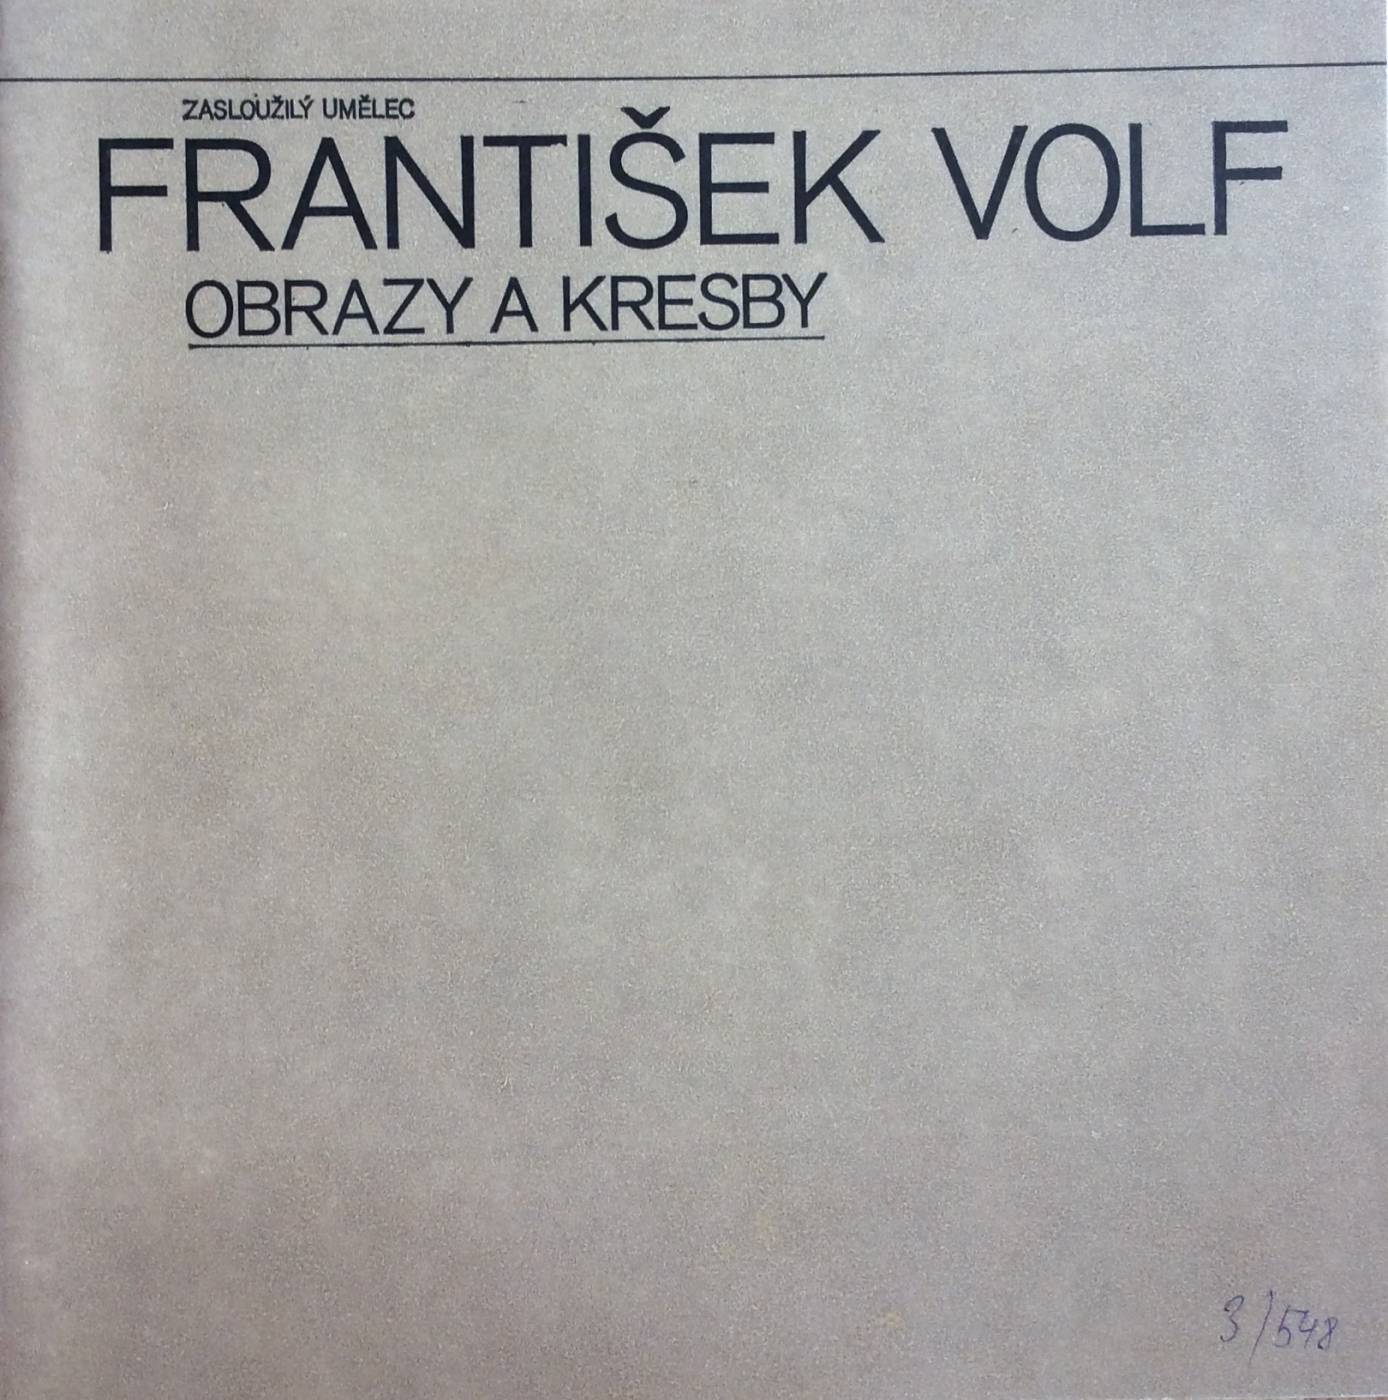 Zasloužilý umělec František Volf – obrazy a kresby